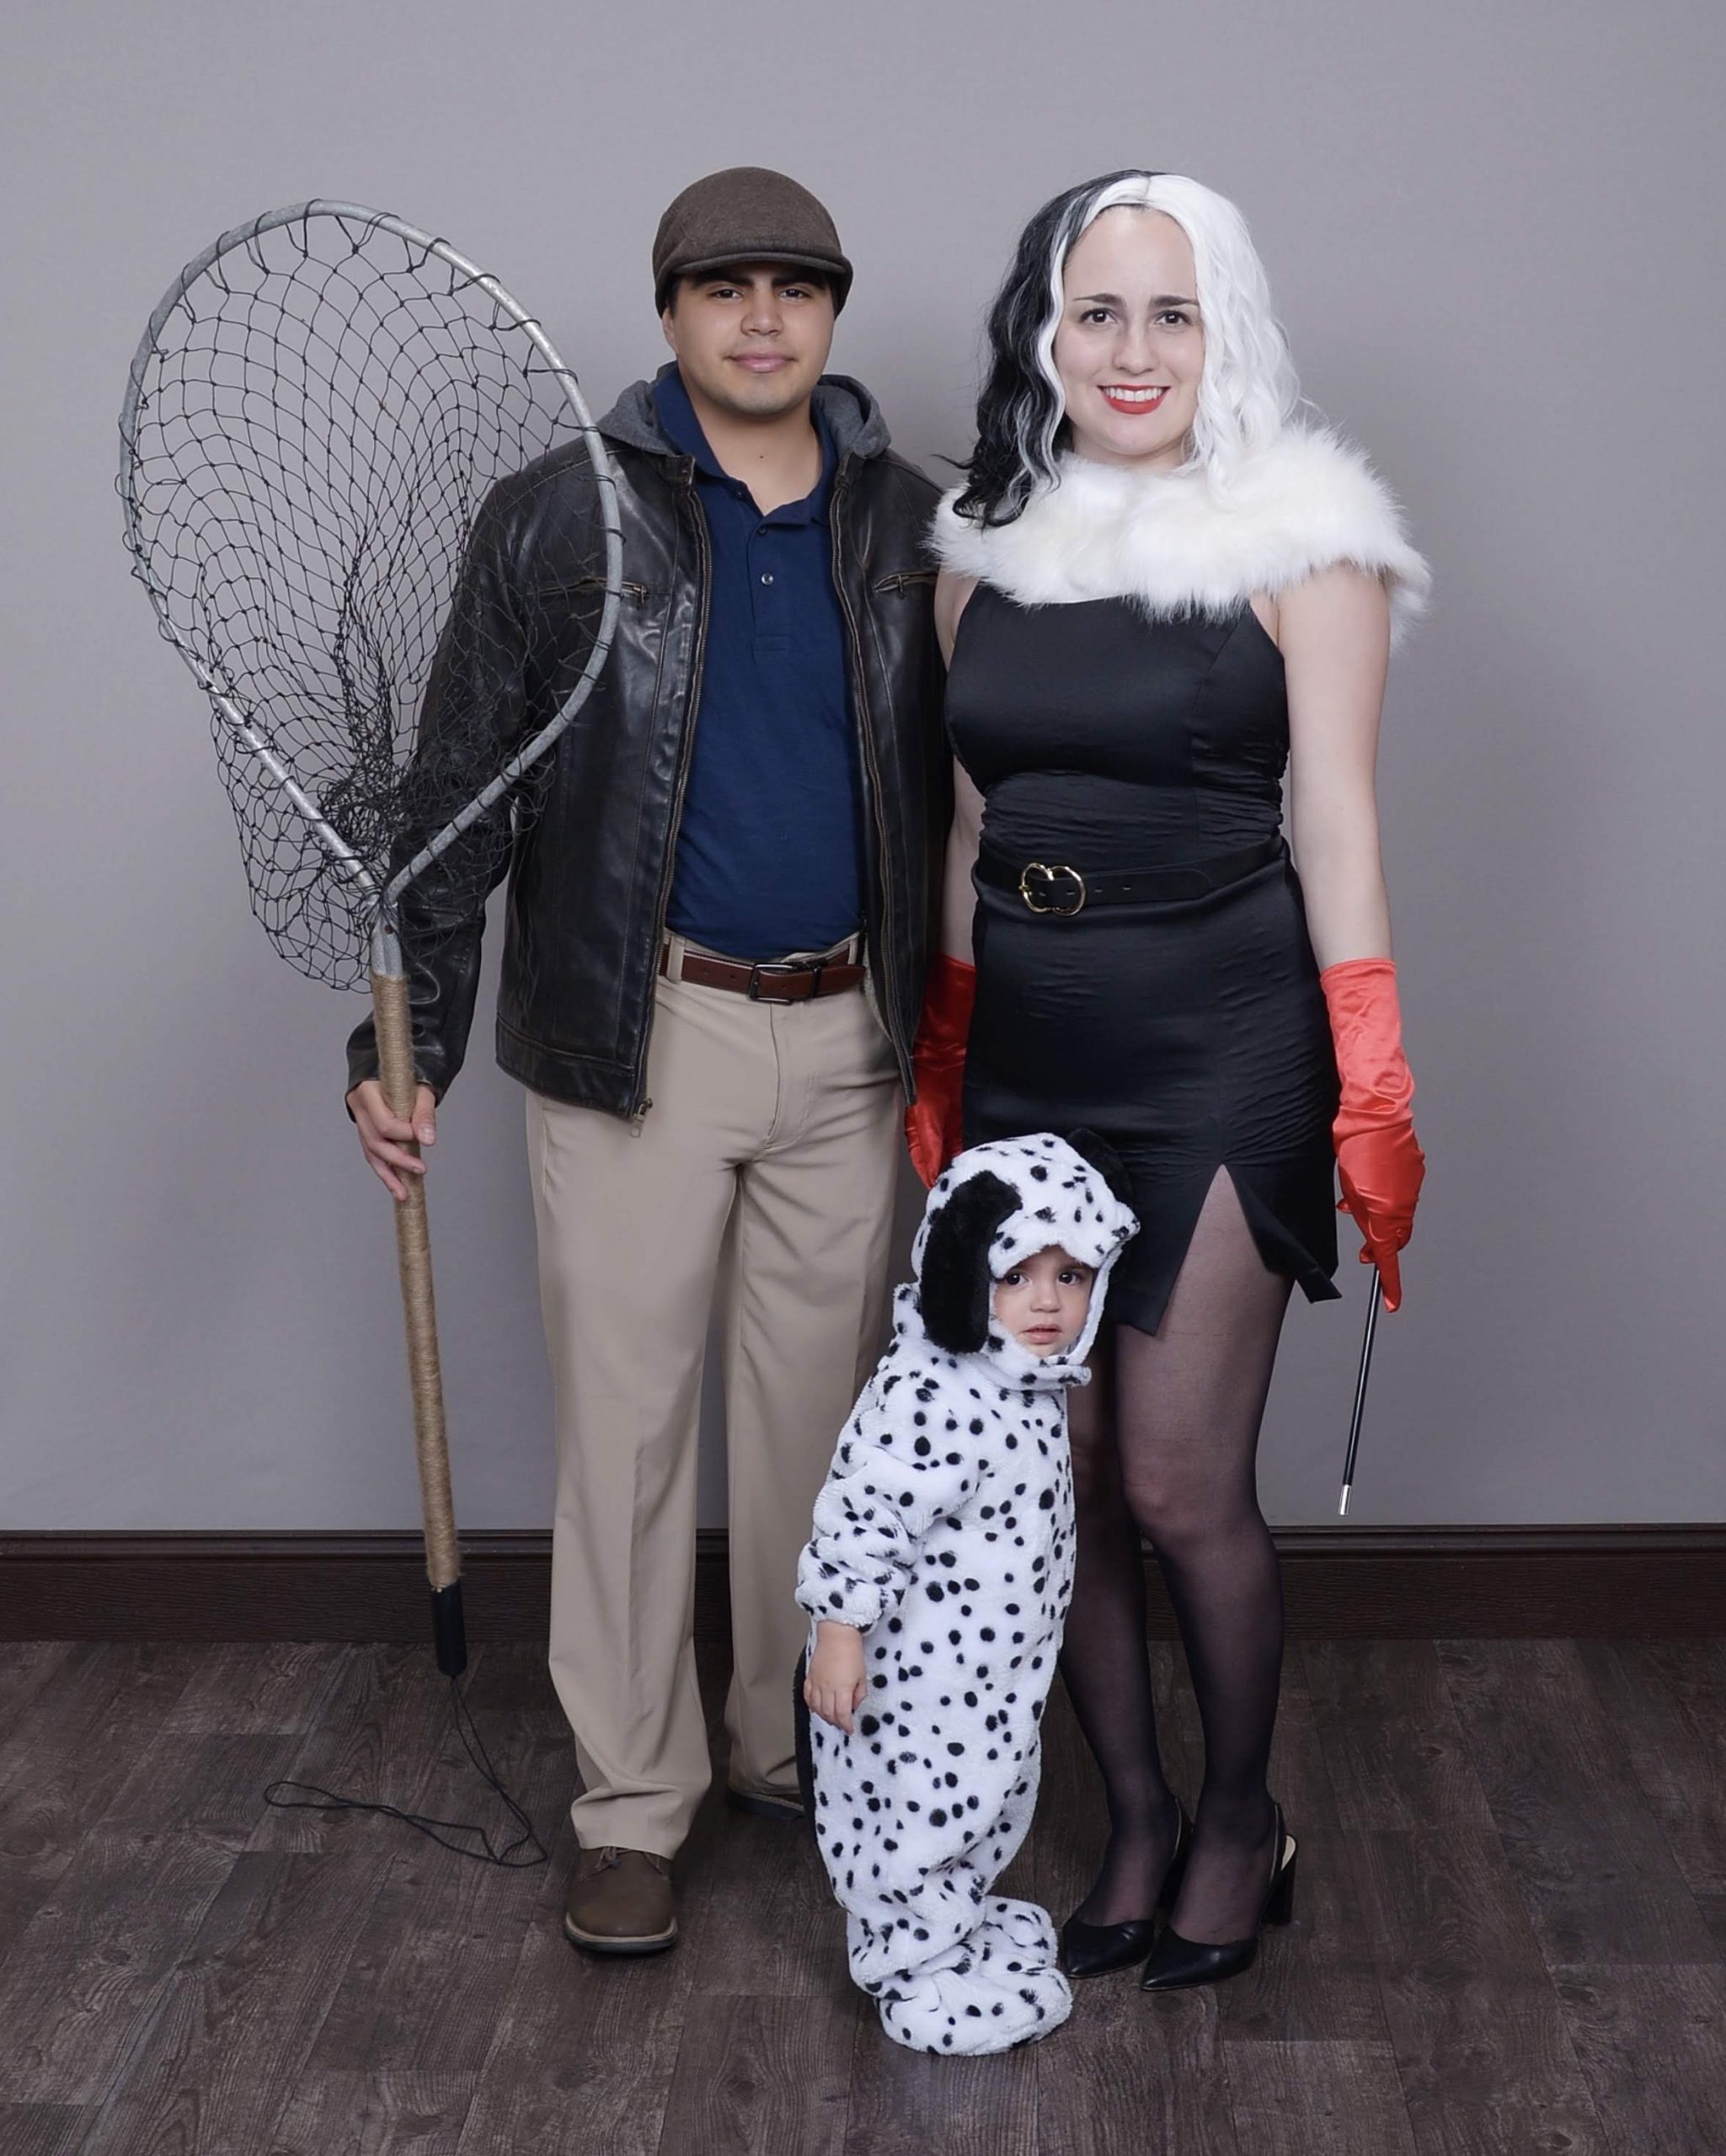 101 Dalmatians Costume